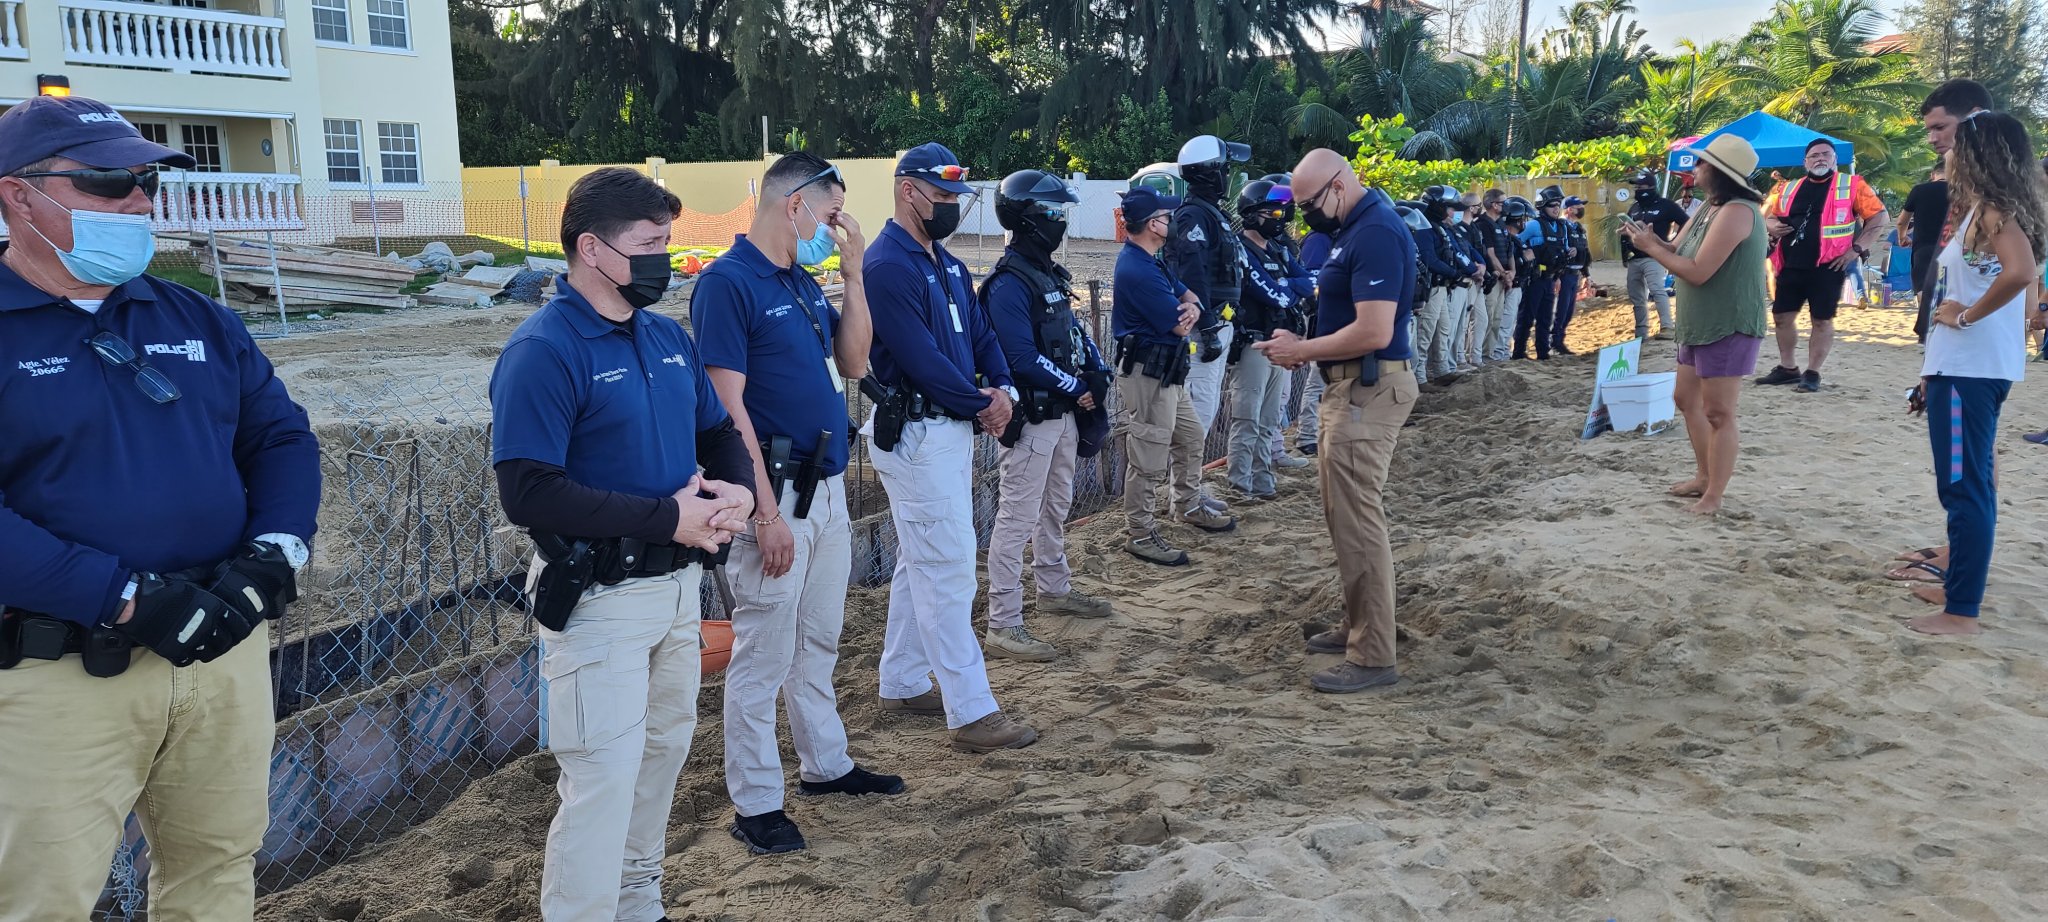 Aumenta la tensión en Playa y Sol, un manifestante fue arrestado